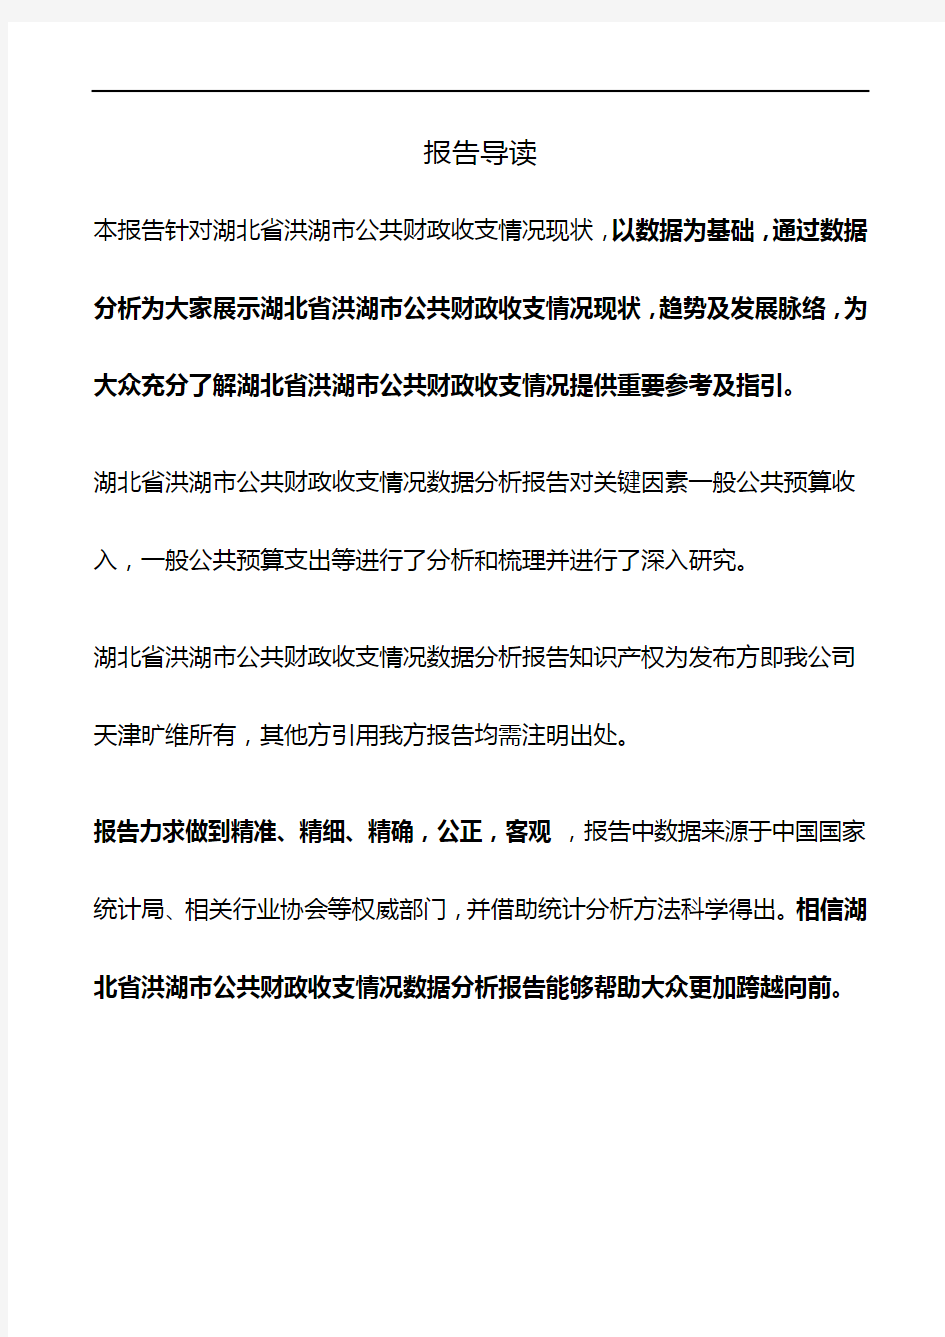 湖北省洪湖市公共财政收支情况3年数据分析报告2019版